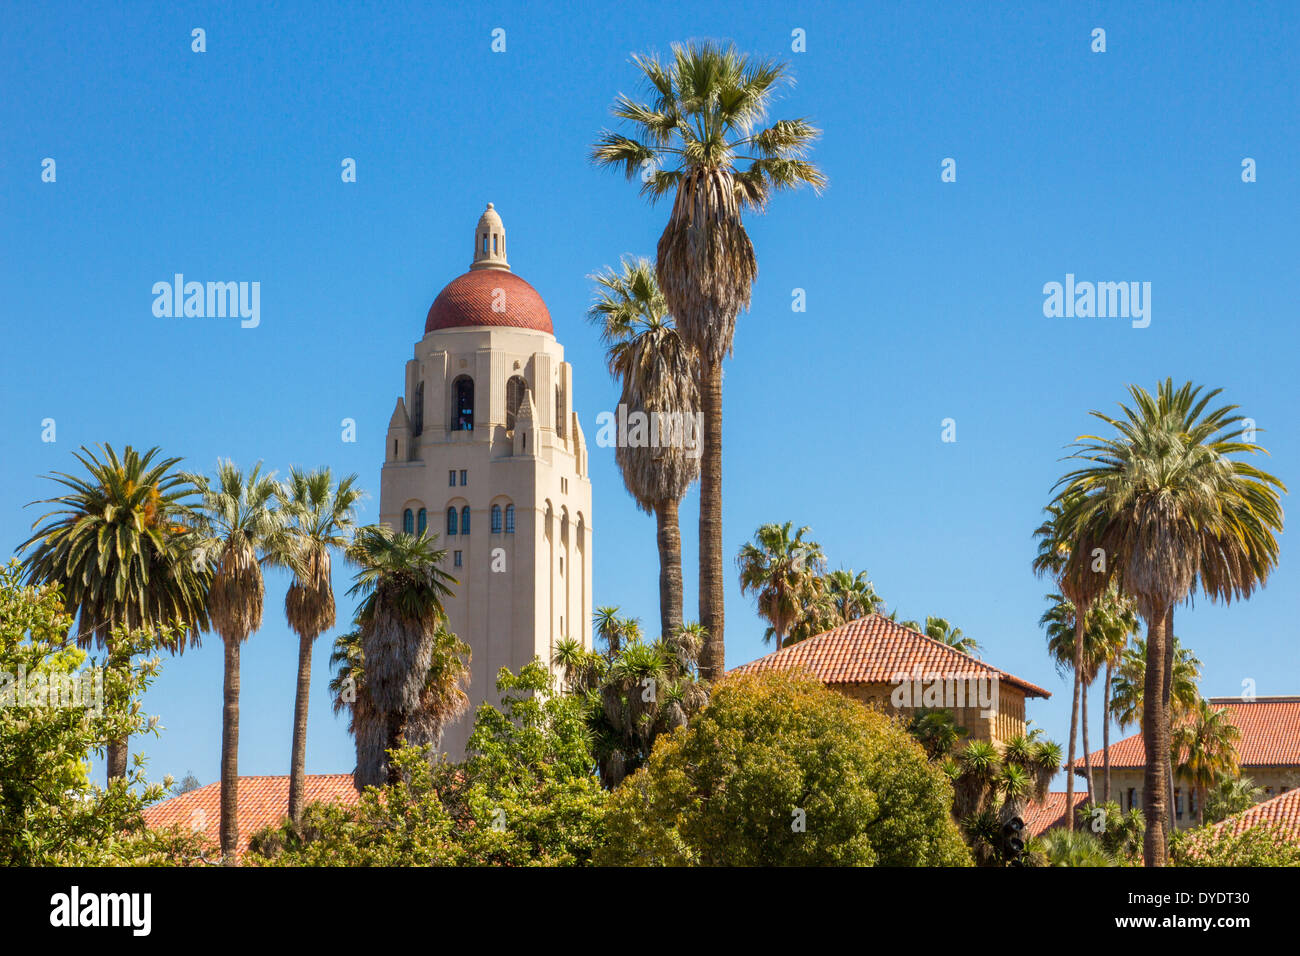 Hoover Tower qui le parmi les palmiers et les toits rouges sur le campus de l'Université de Stanford en Californie Banque D'Images